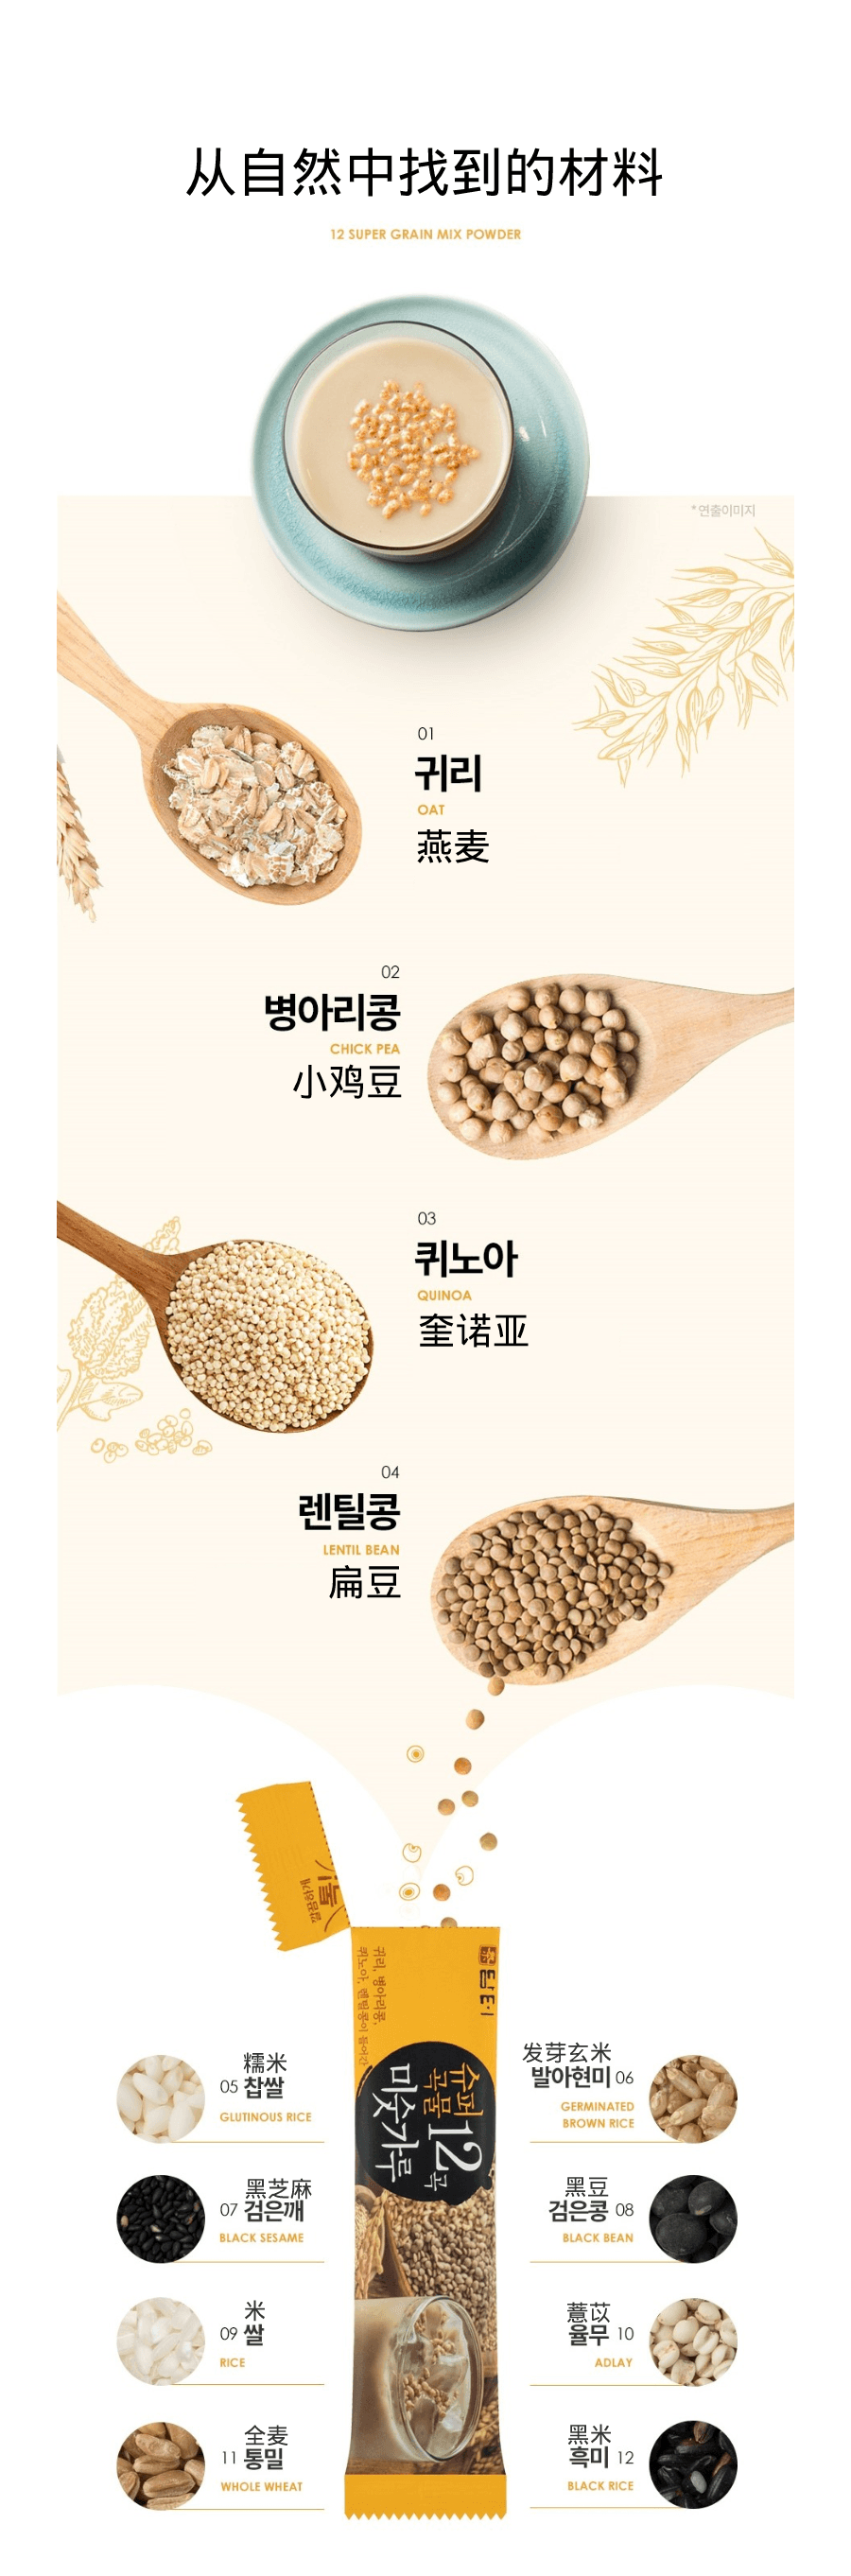 韩国DAMTUH丹特 12粒超级五谷杂粉 40条入 800g 2 包